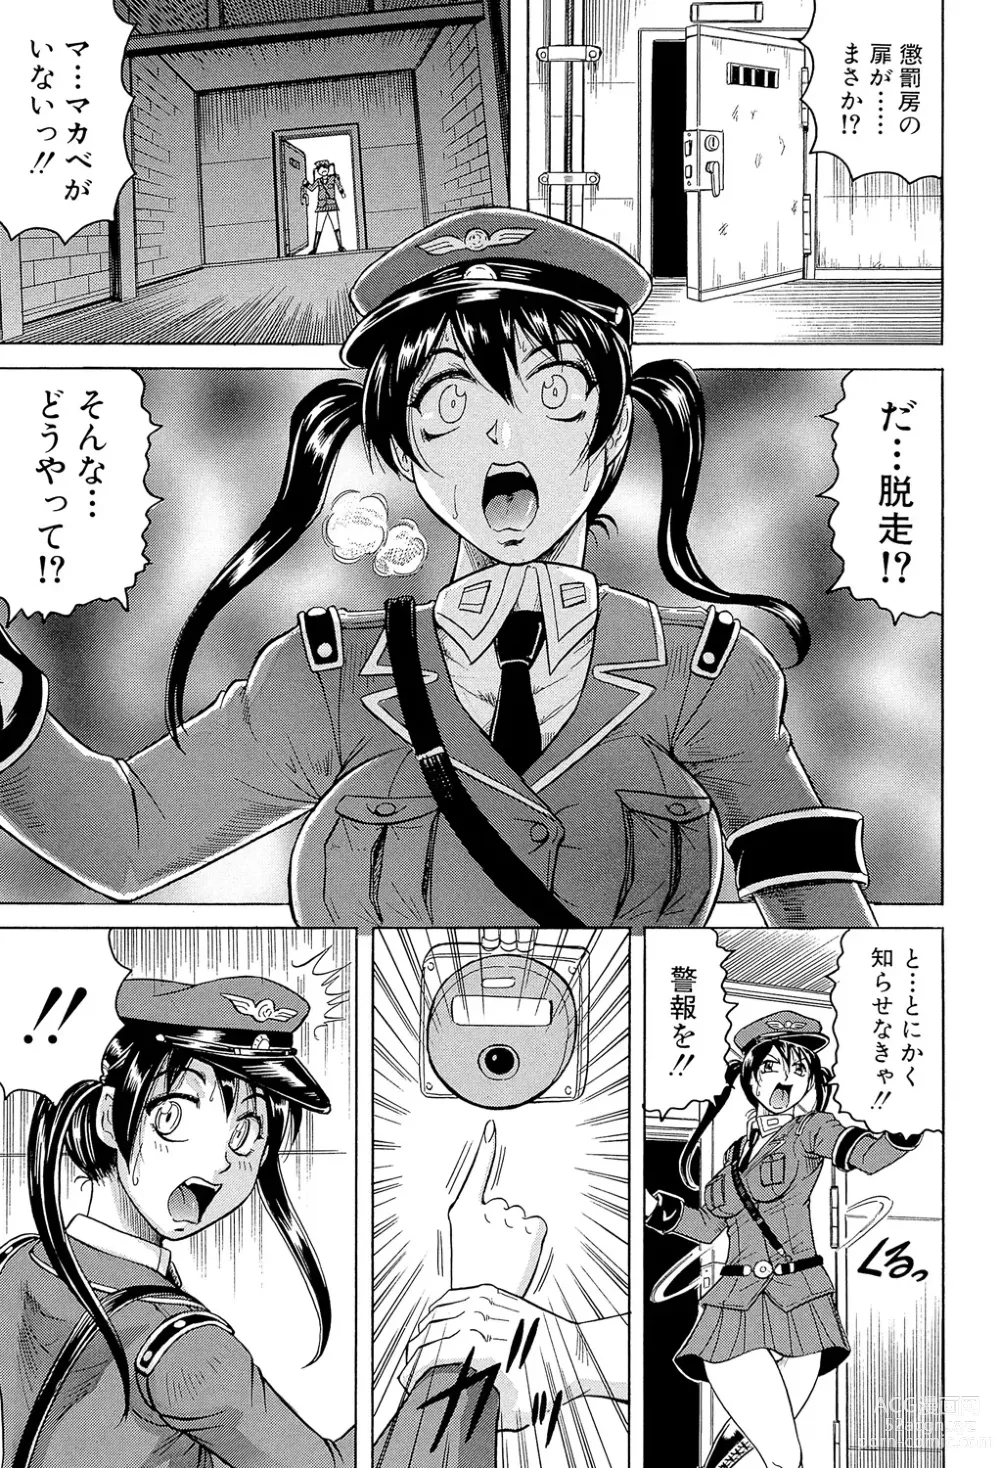 Page 13 of manga Kangokujima